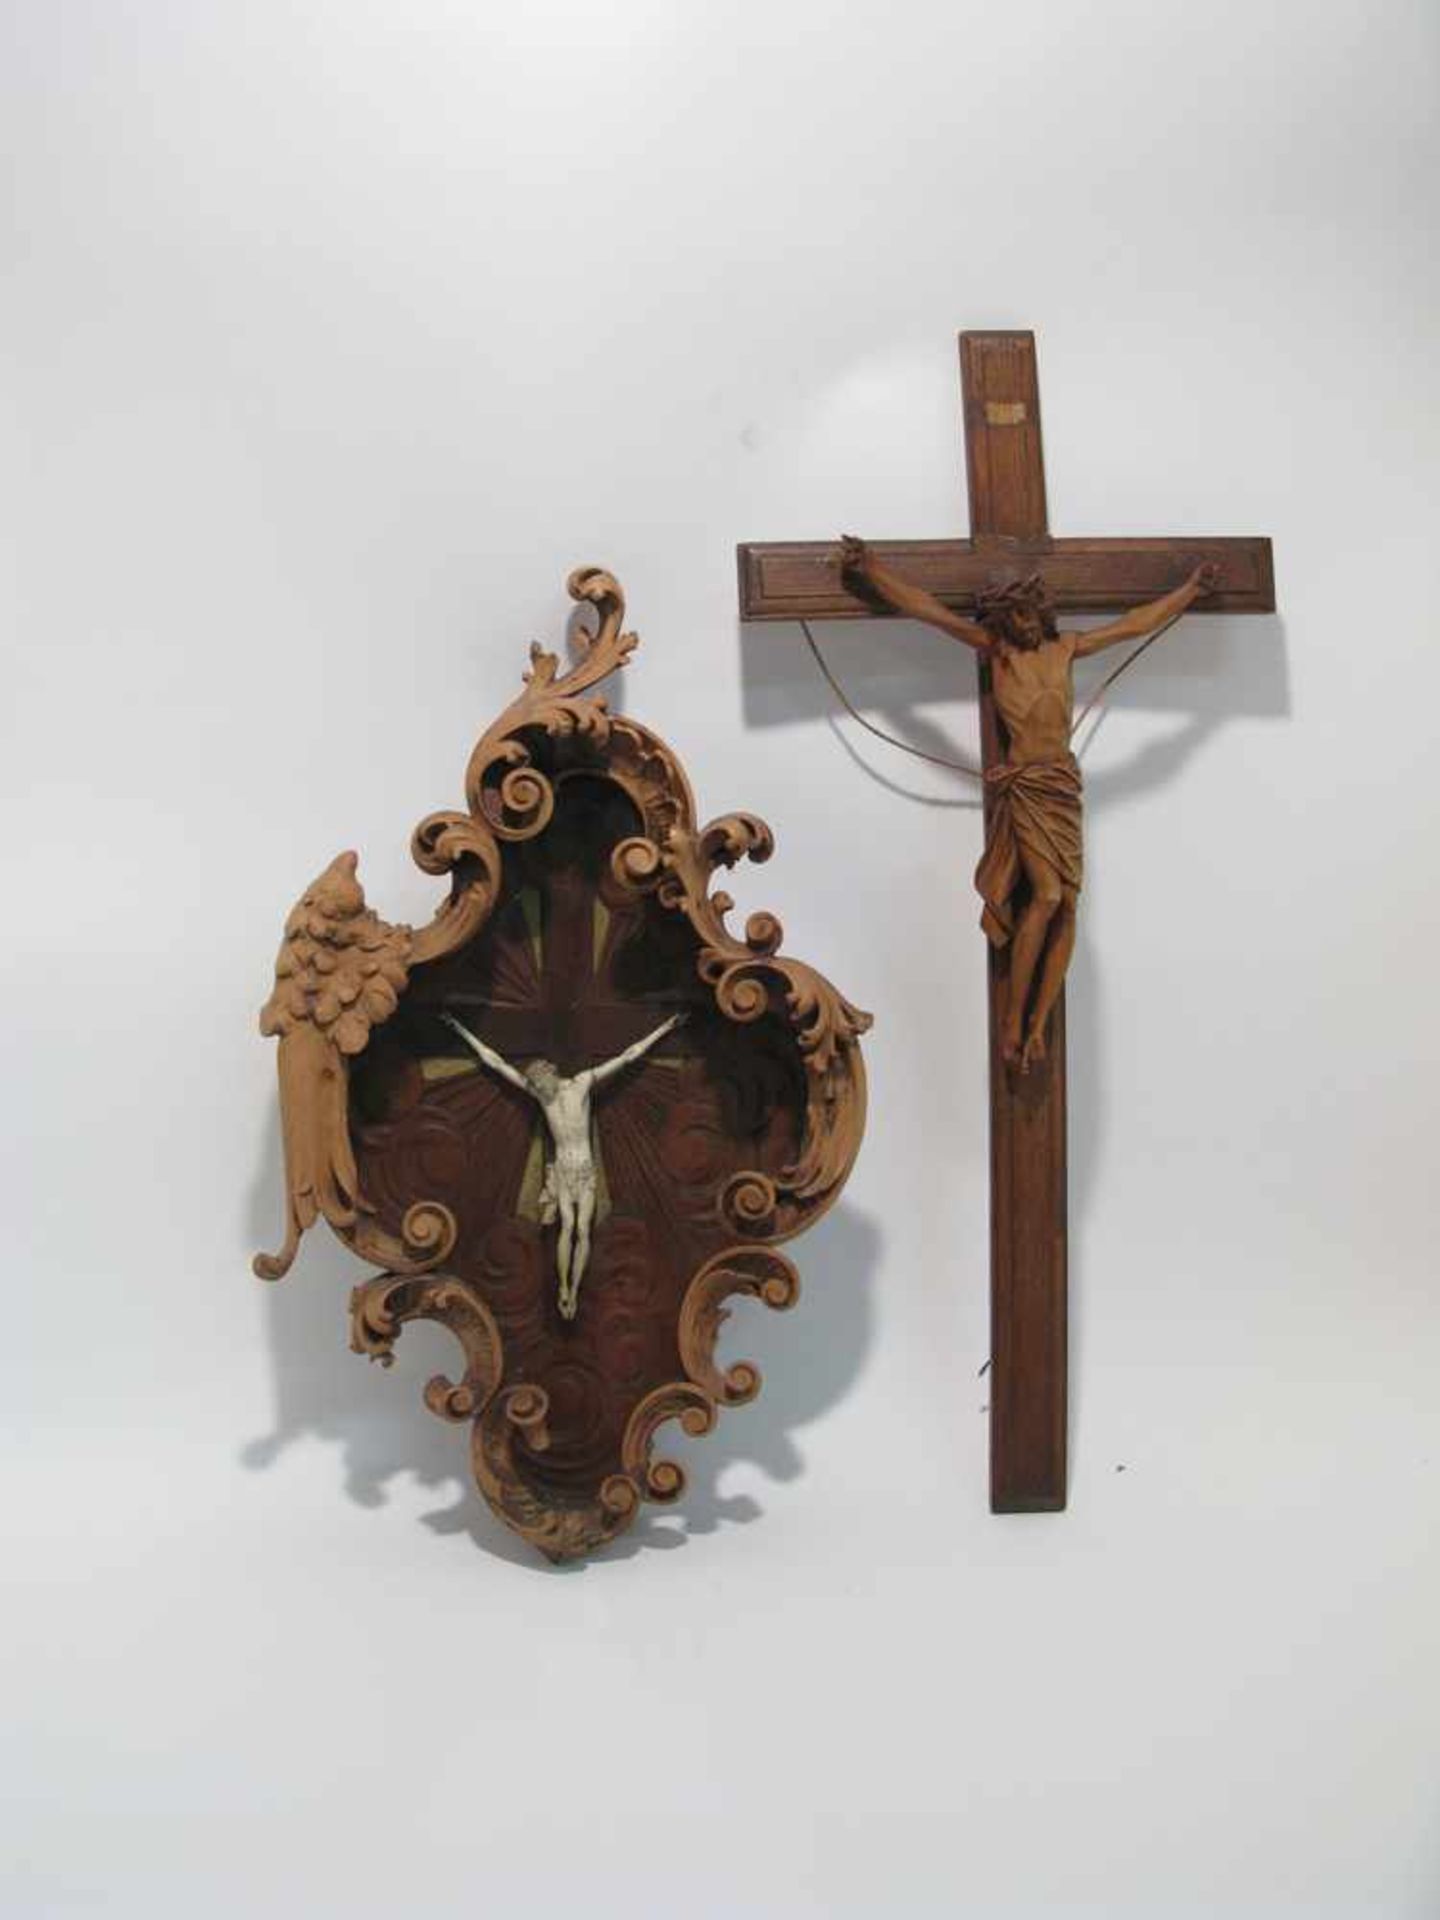 Christus am Kreuz Barockstil. Bein-Corpus auf flachem Holzkreuz mit umgebenden Strahlen und